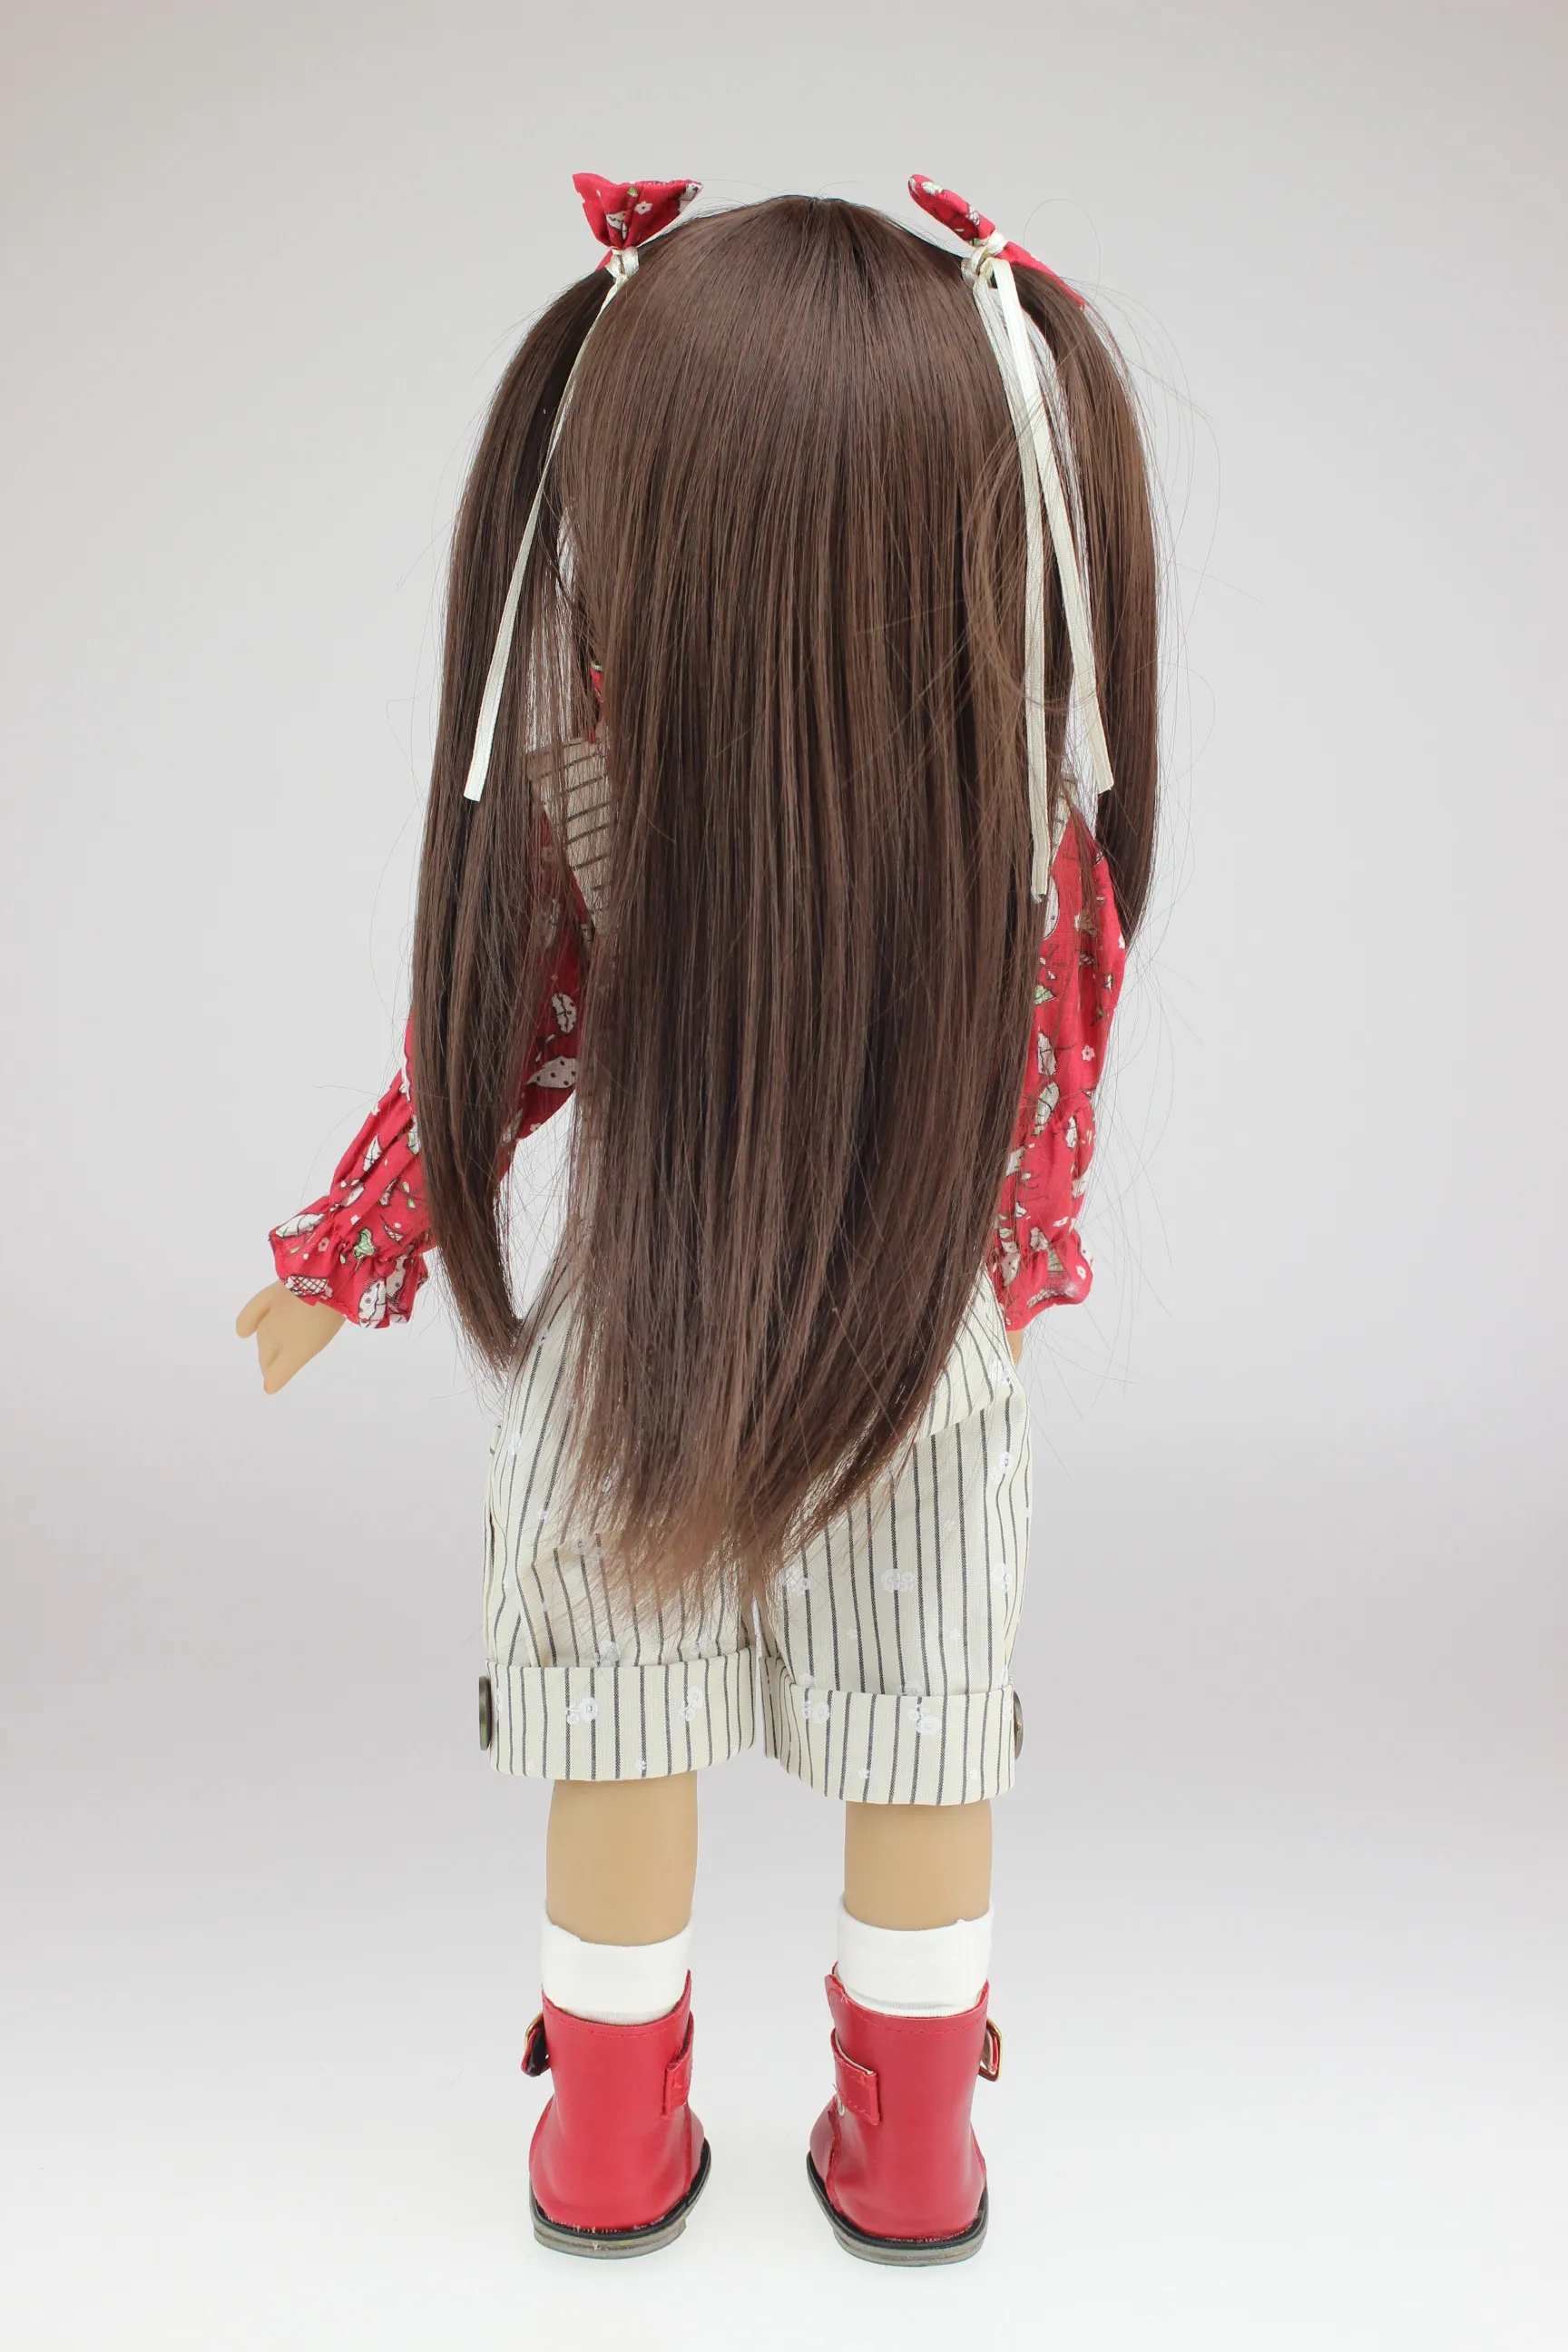 18 tums docka realistisk amerikansk tjej full vinyl återfödd dockor som jul födelsedag gåvor